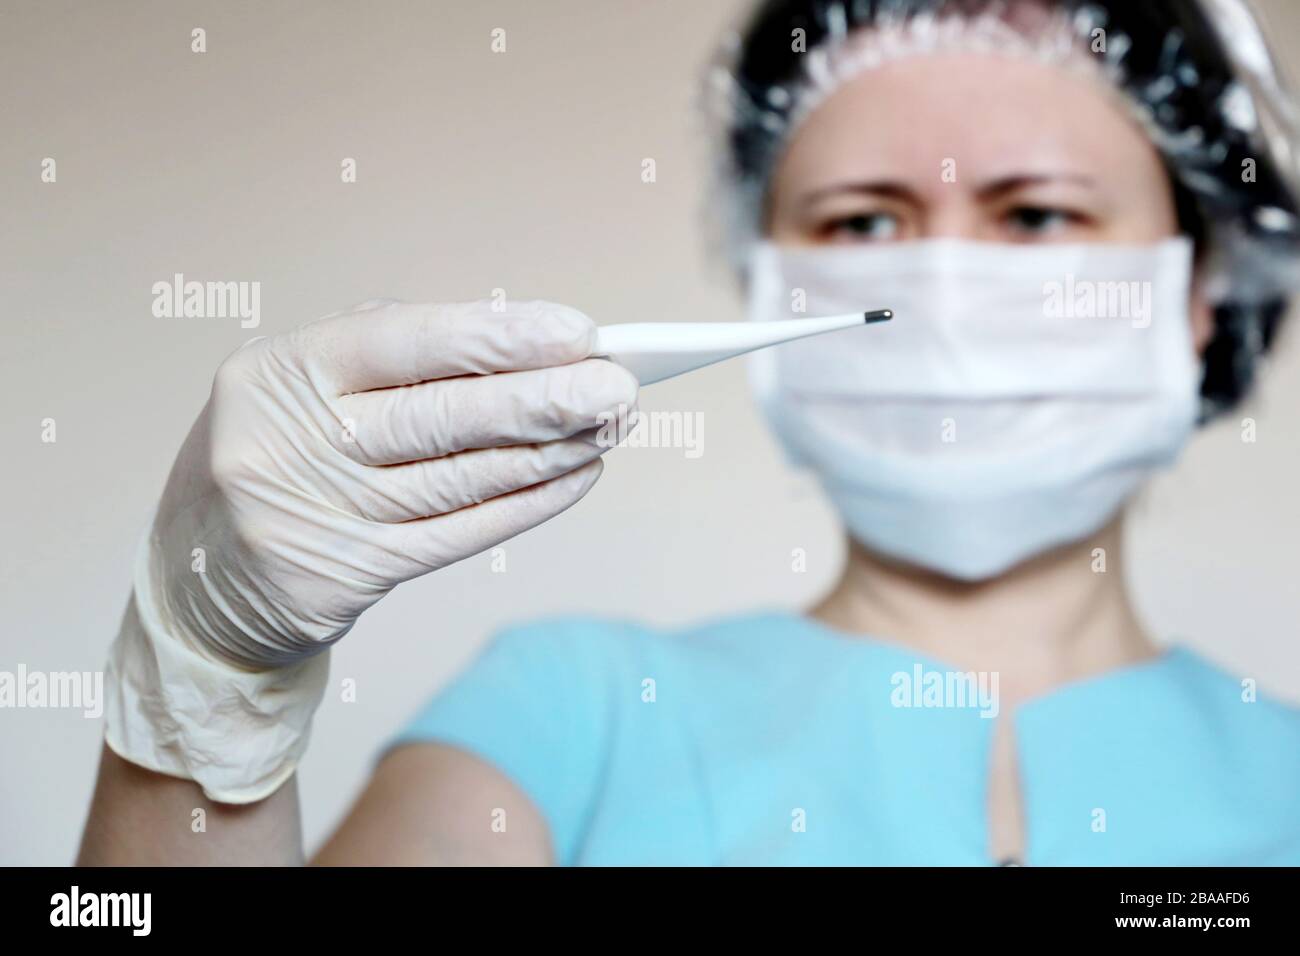 Síntomas del coronavirus, la mujer con máscara médica mide la temperatura corporal. El doctor mira el termómetro digital en su mano, el concepto de frío y gripe Foto de stock